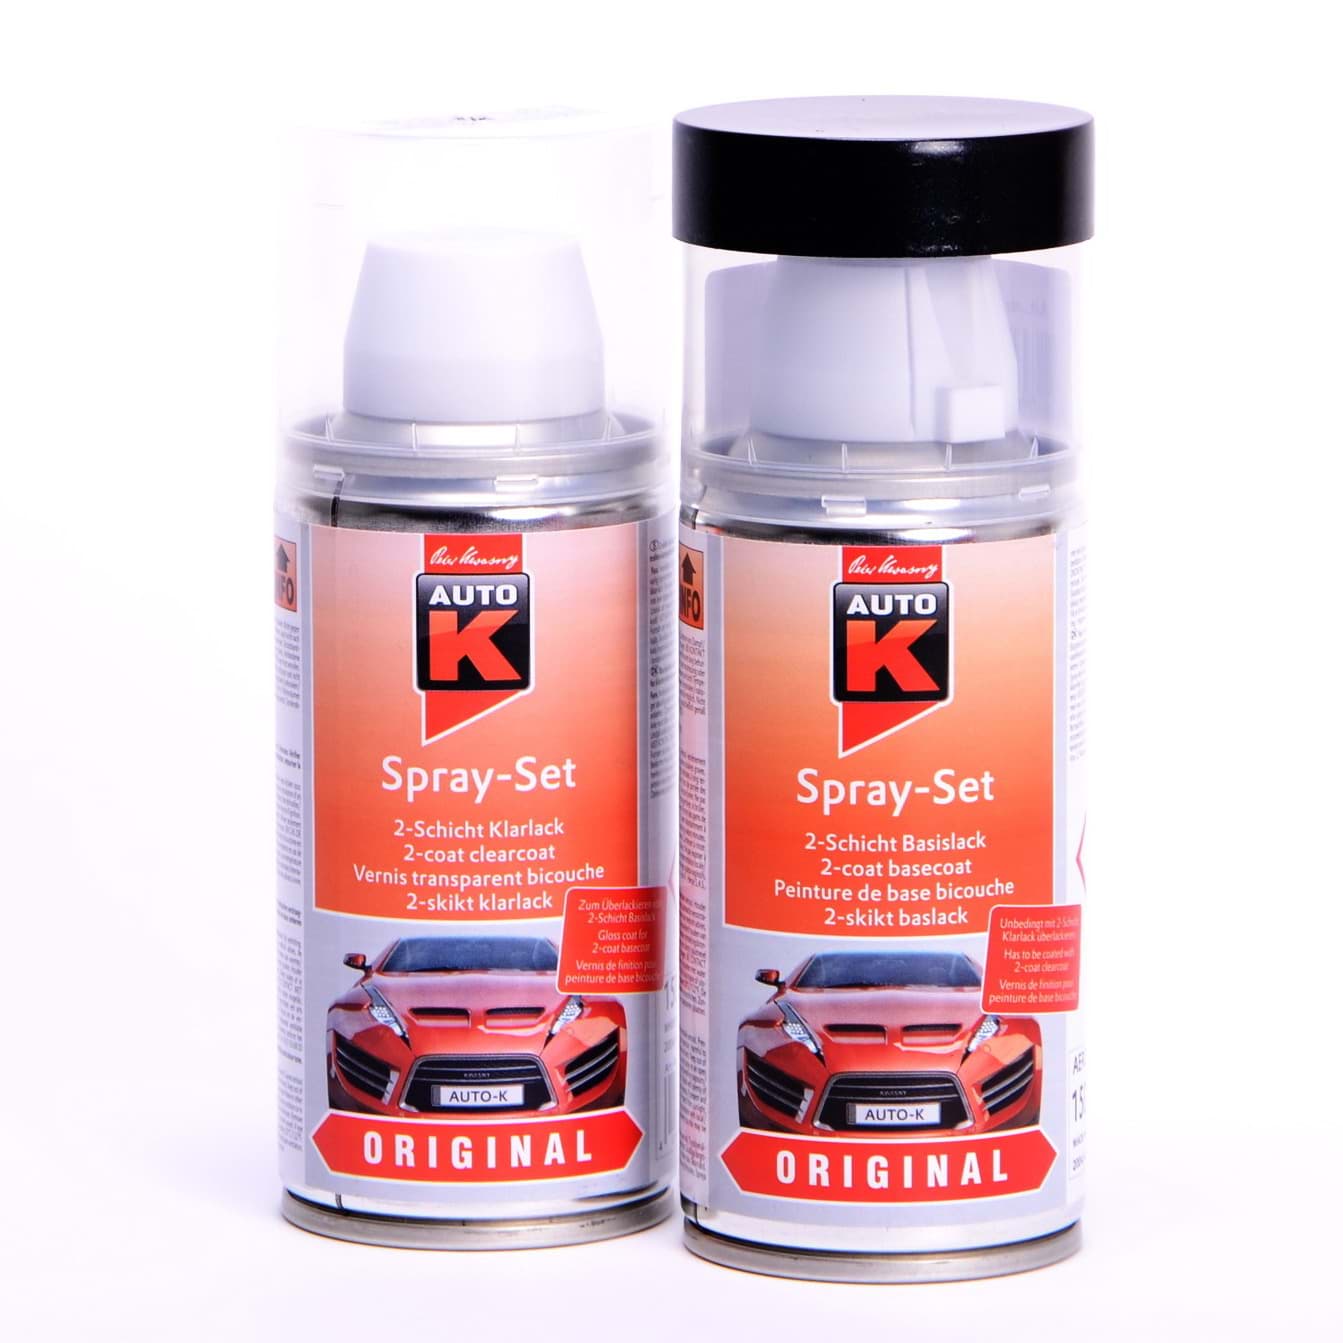 Afbeelding van Auto-K Spray-Set Autolack für Opel 270 Spectralblau met 21367